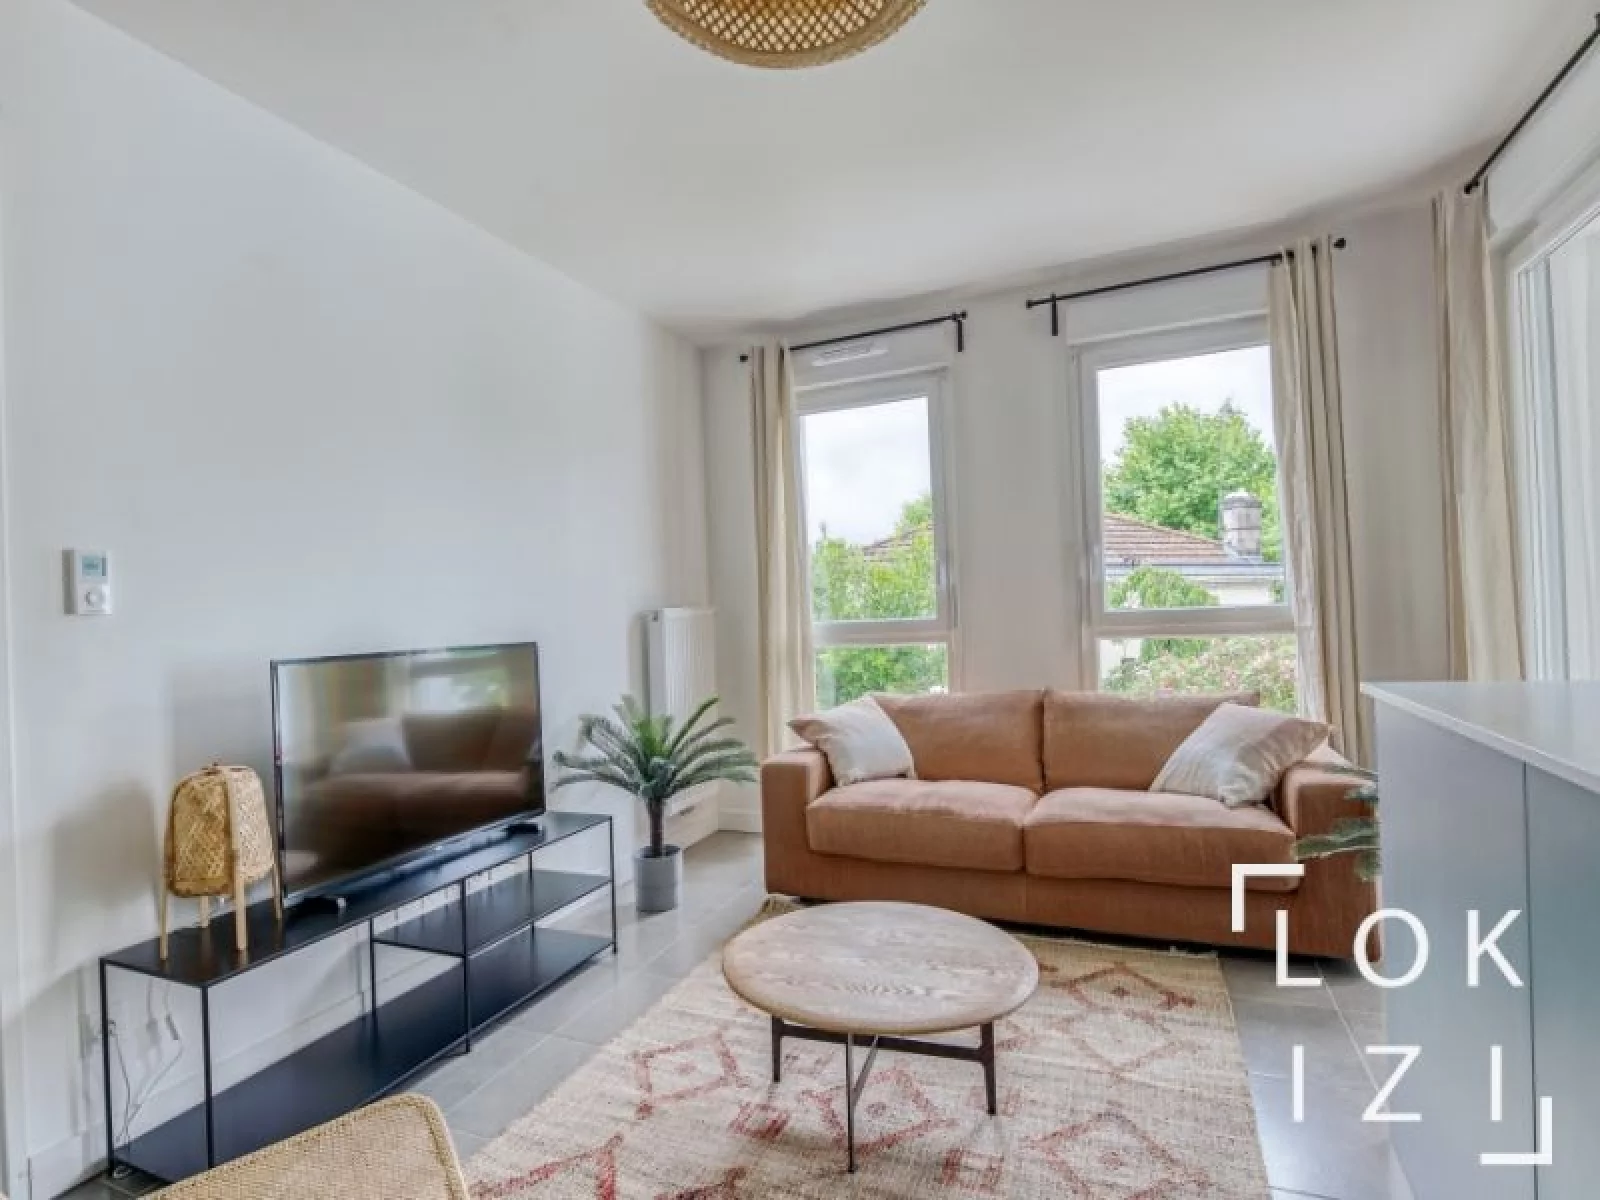 Location appartement meublé 3 pièces 64m²  (Bordeaux - Bacalan)